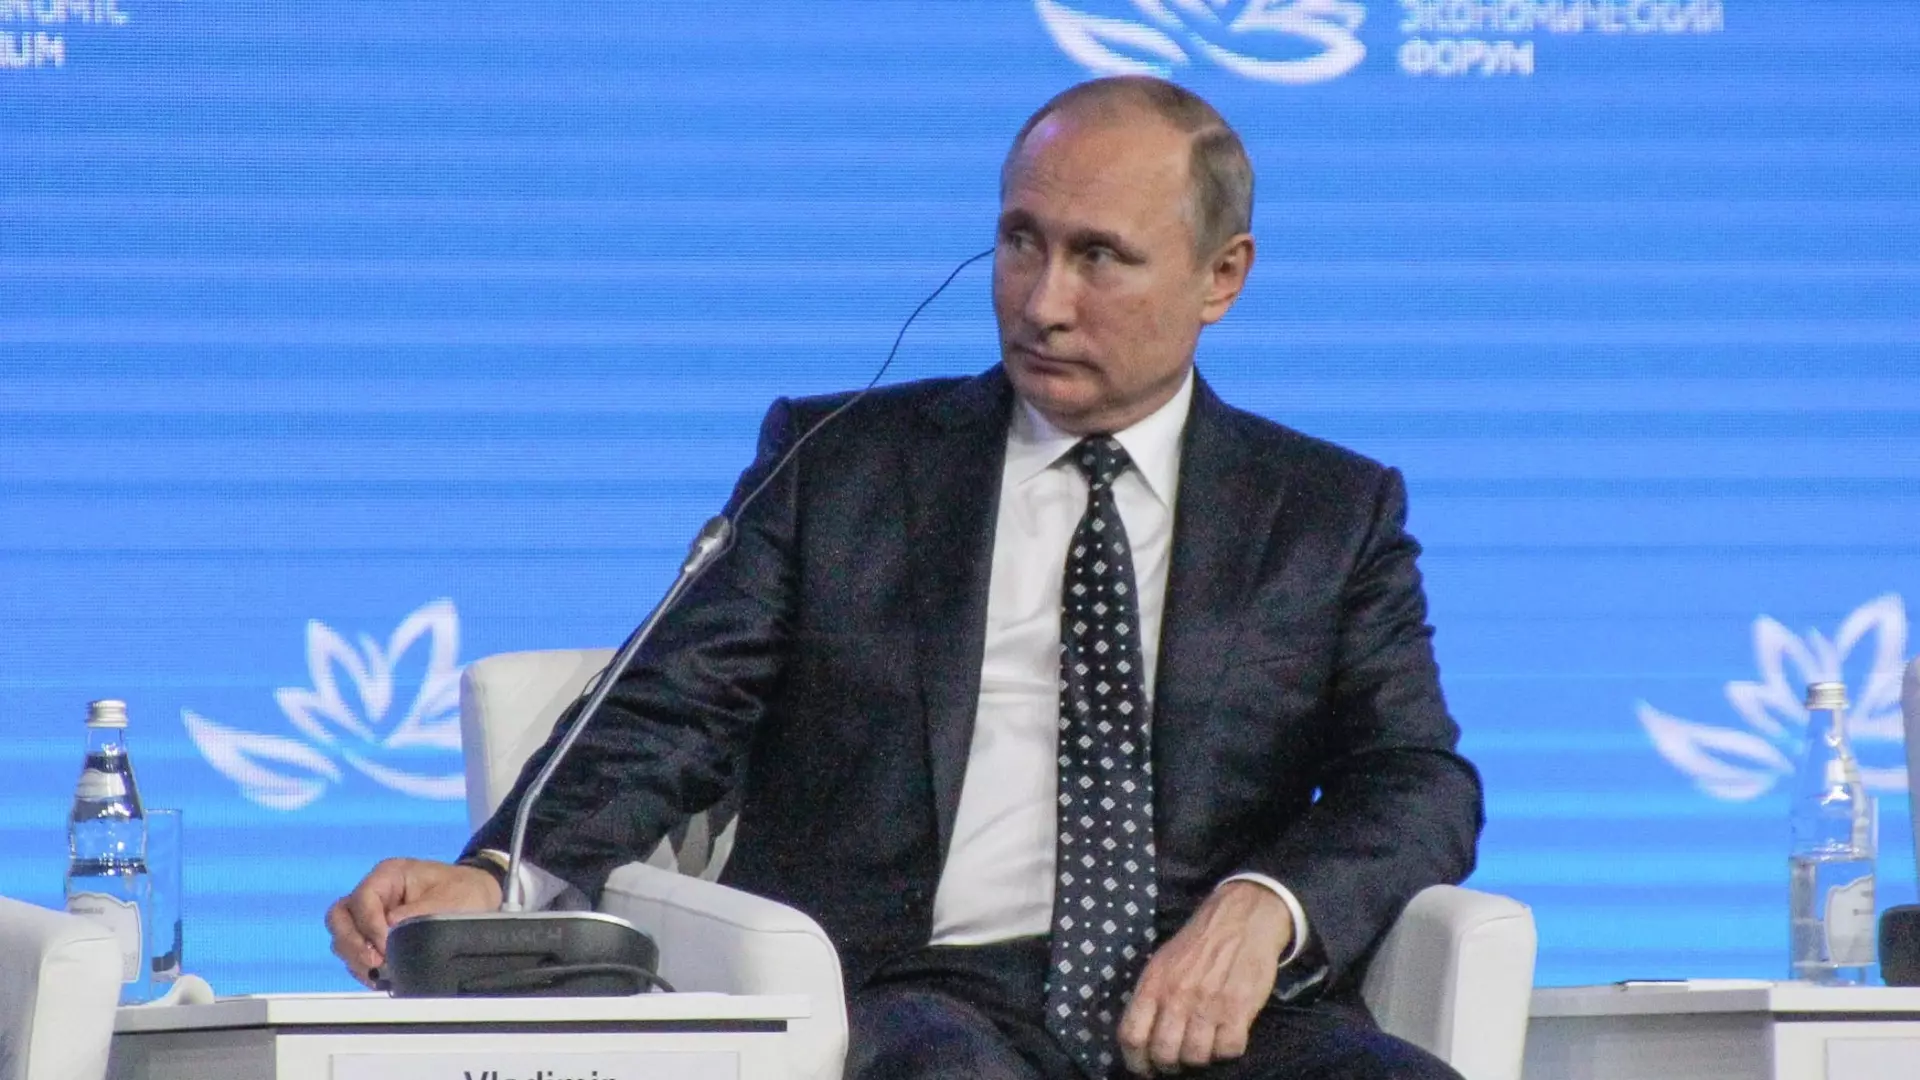 Песков: Путин пока не принимал решение о выдвижении на новый срок